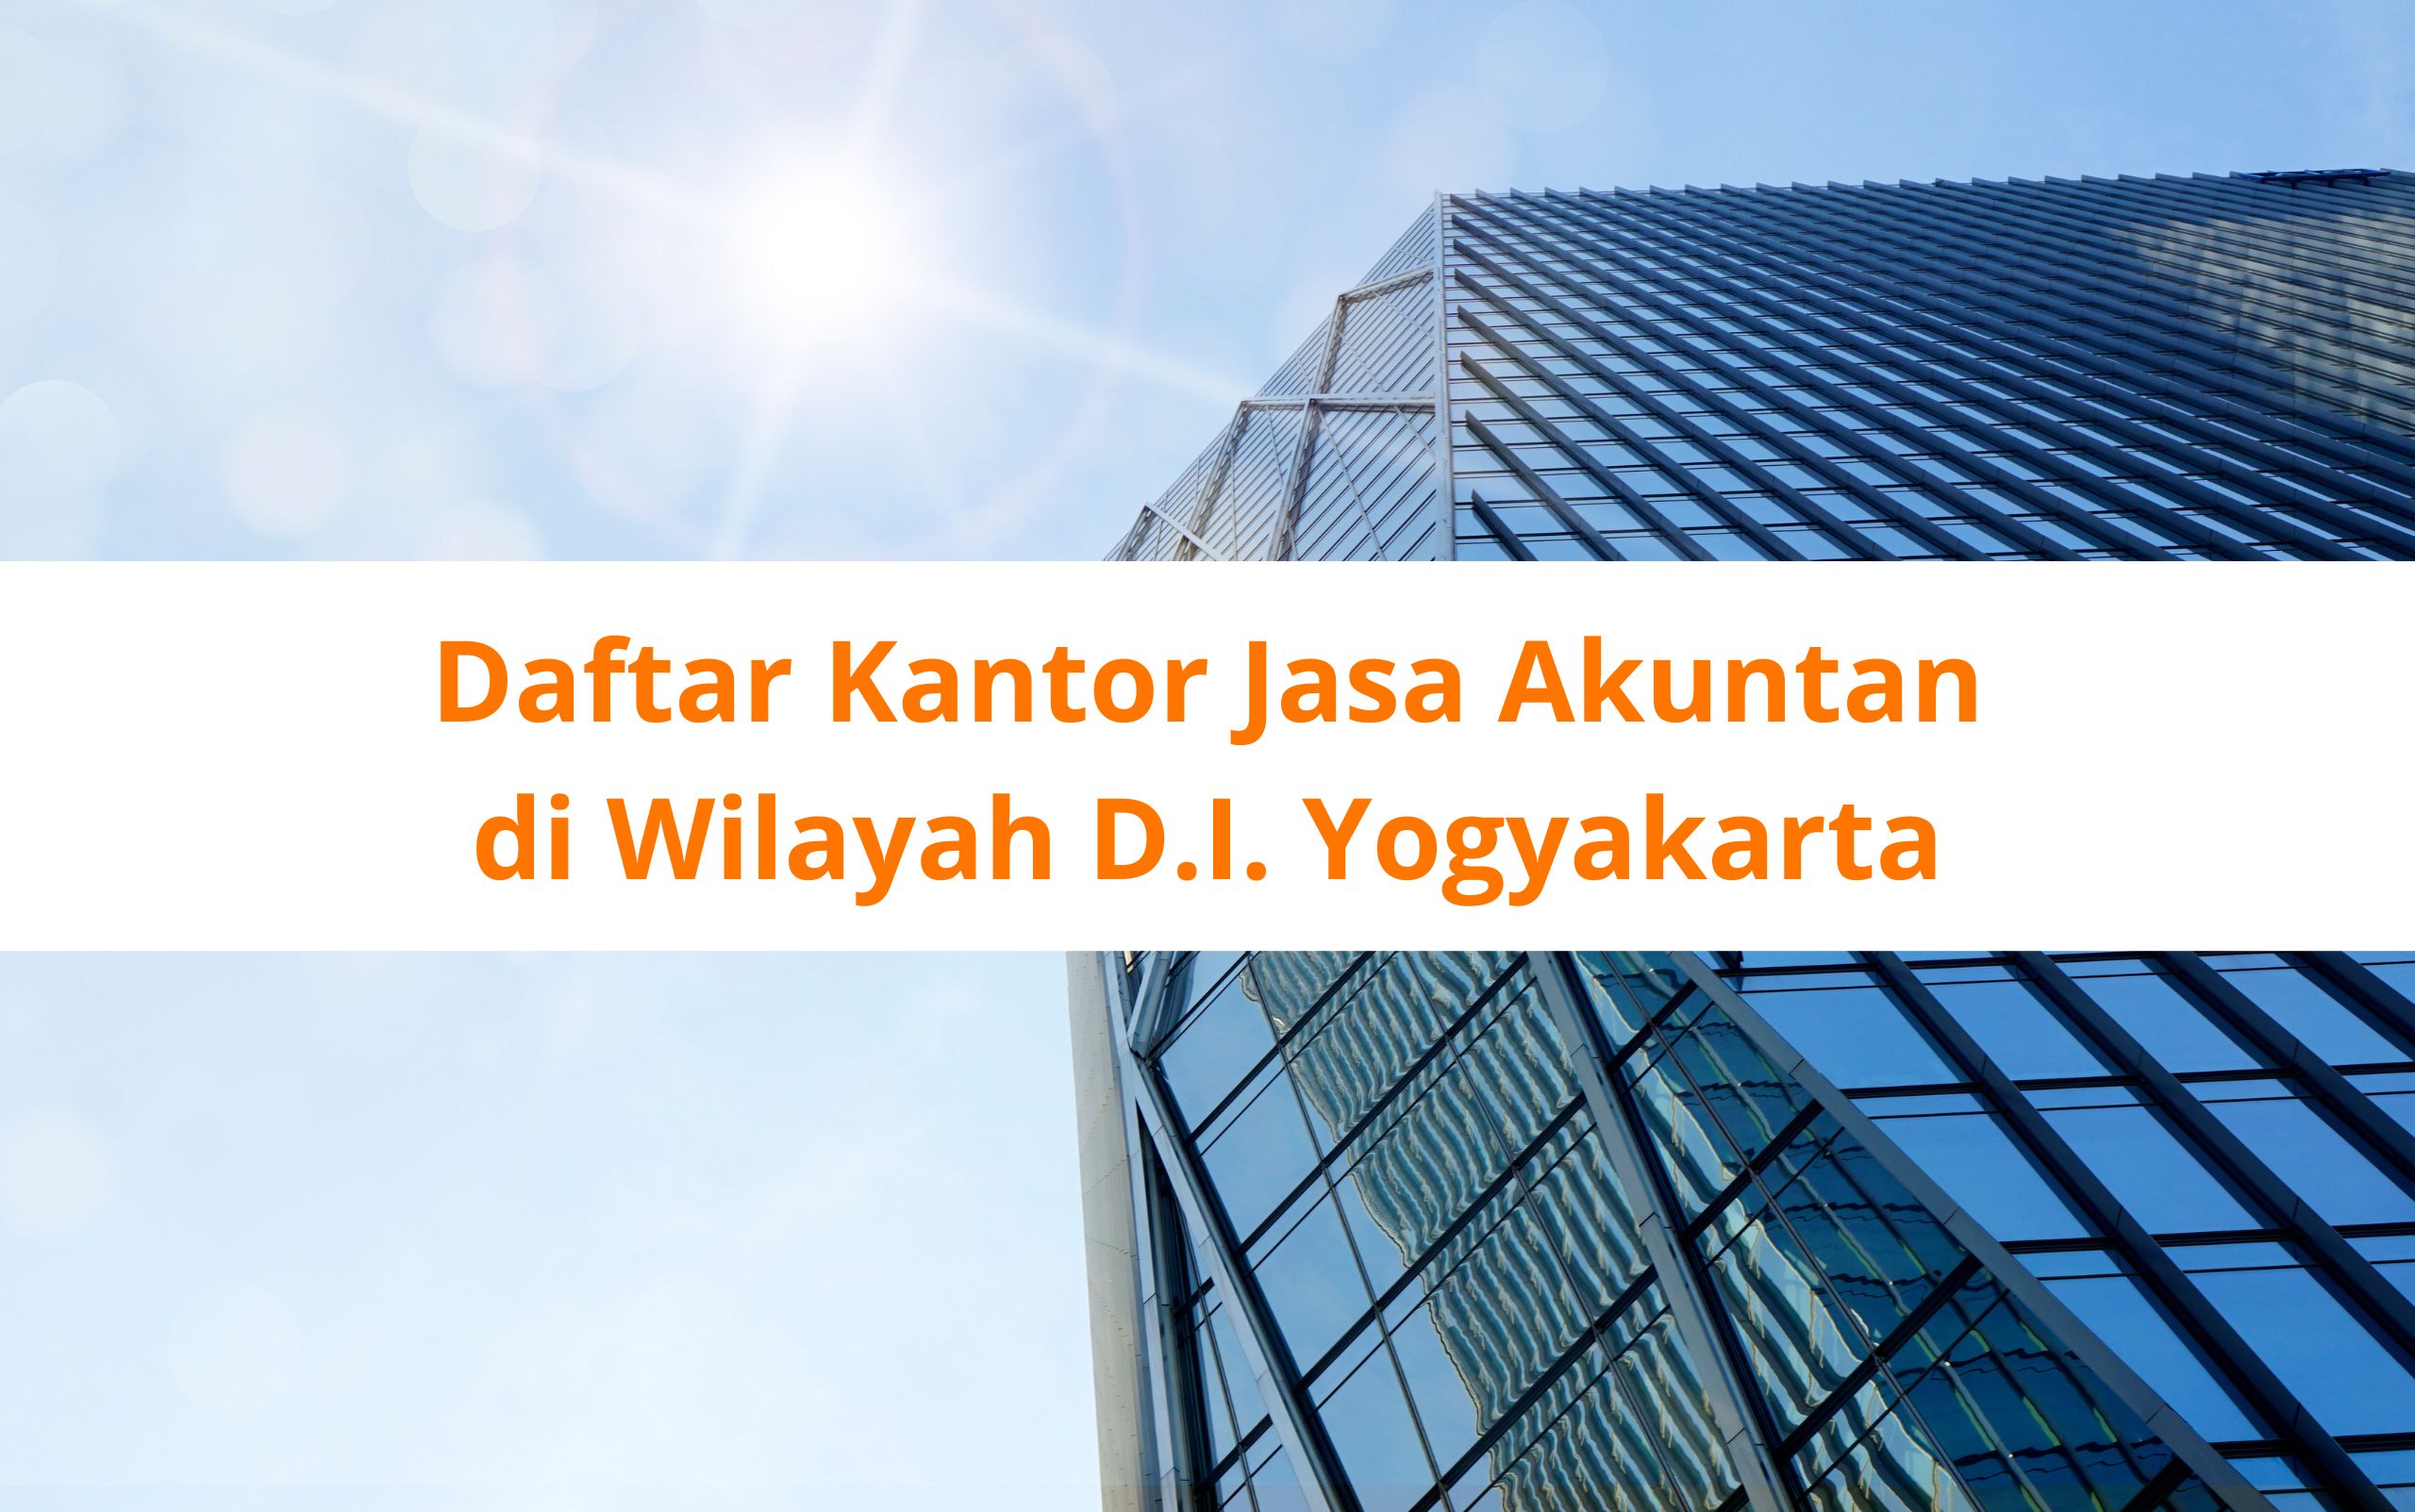 Daftar Kantor Jasa Akuntan yang ada di DI. Yogyakarta